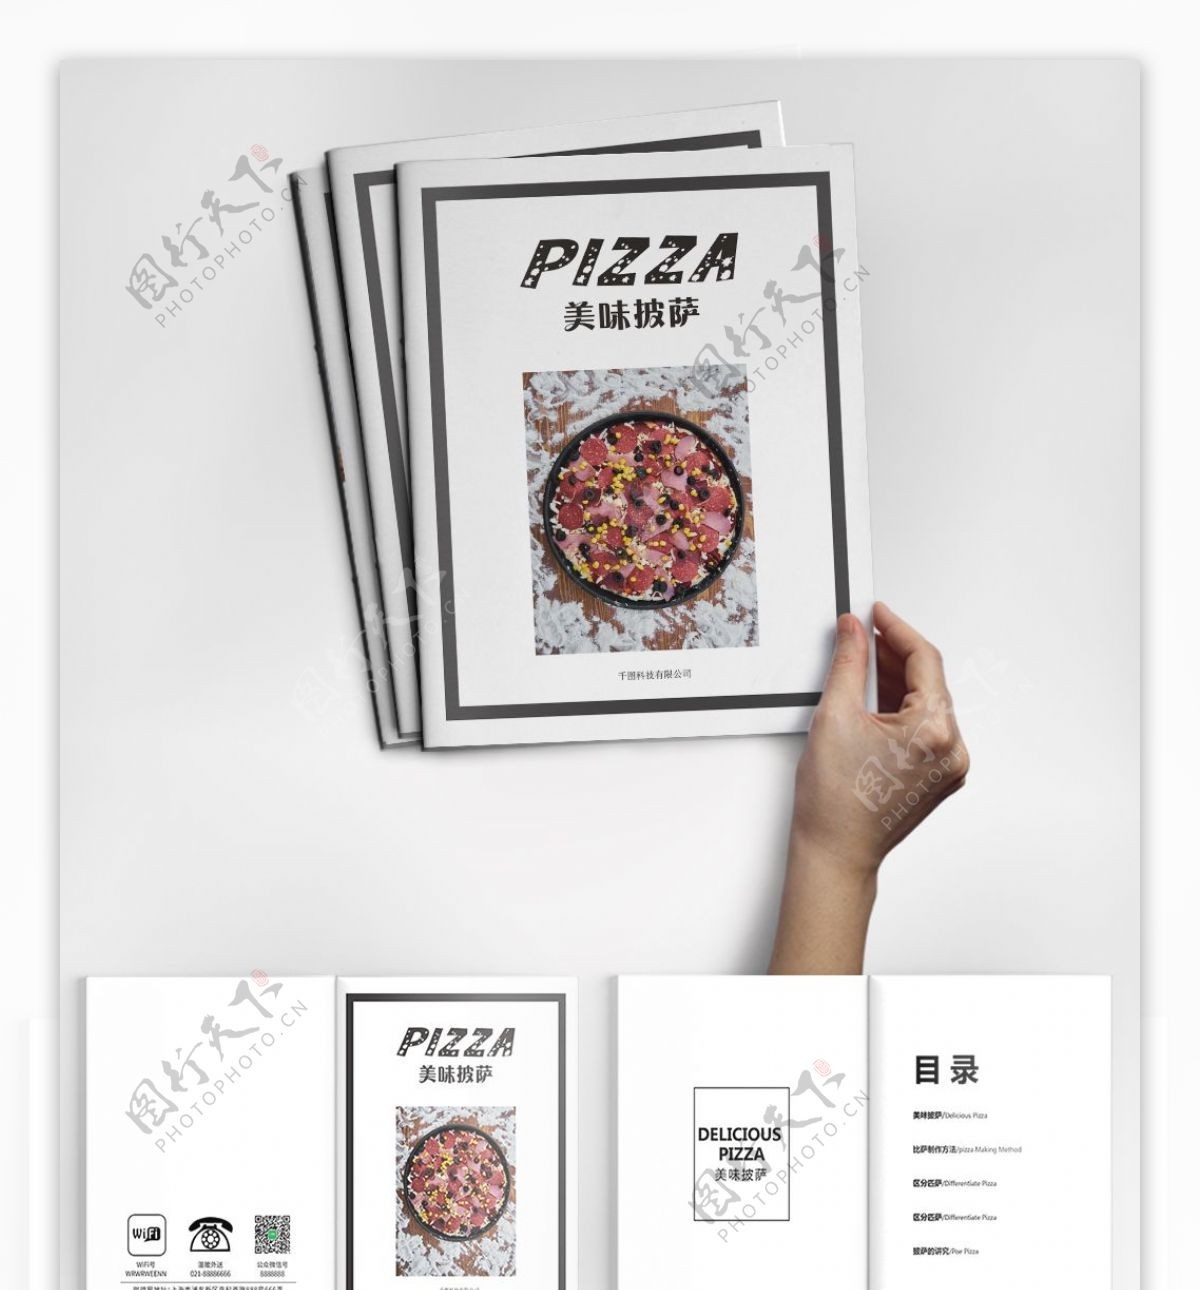 时尚简约高端大气披萨美食宣传促销画册